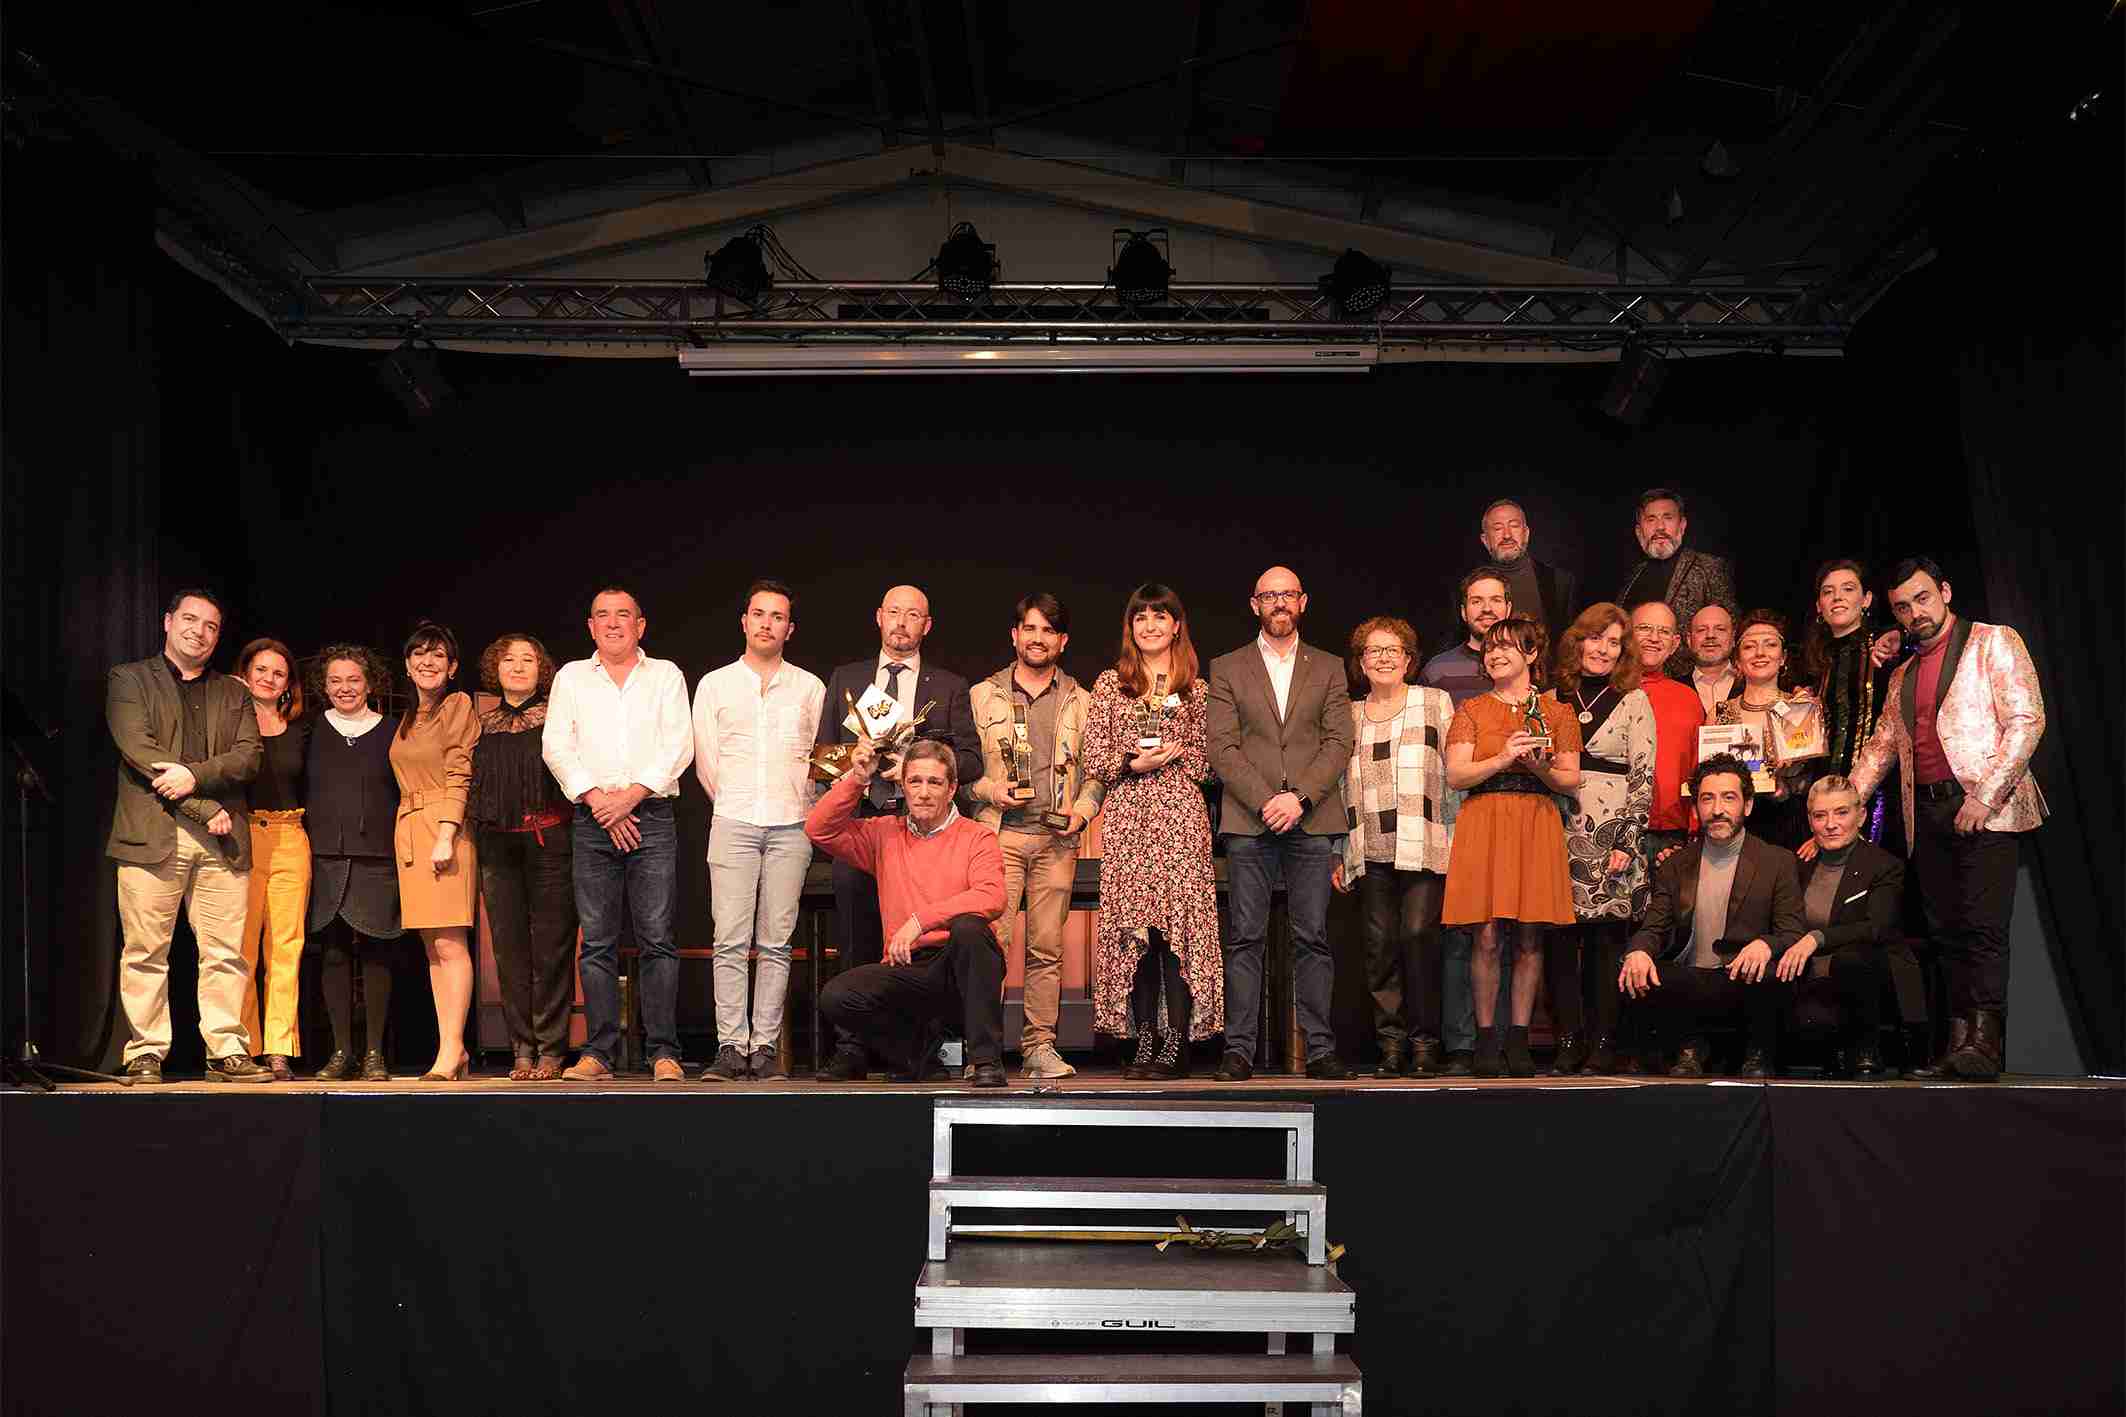 Teatro en Construcción con ‘Huanita’ gana el XIV Certamen Nacional de Teatro Aficionado “Viaje al Parnaso” 2